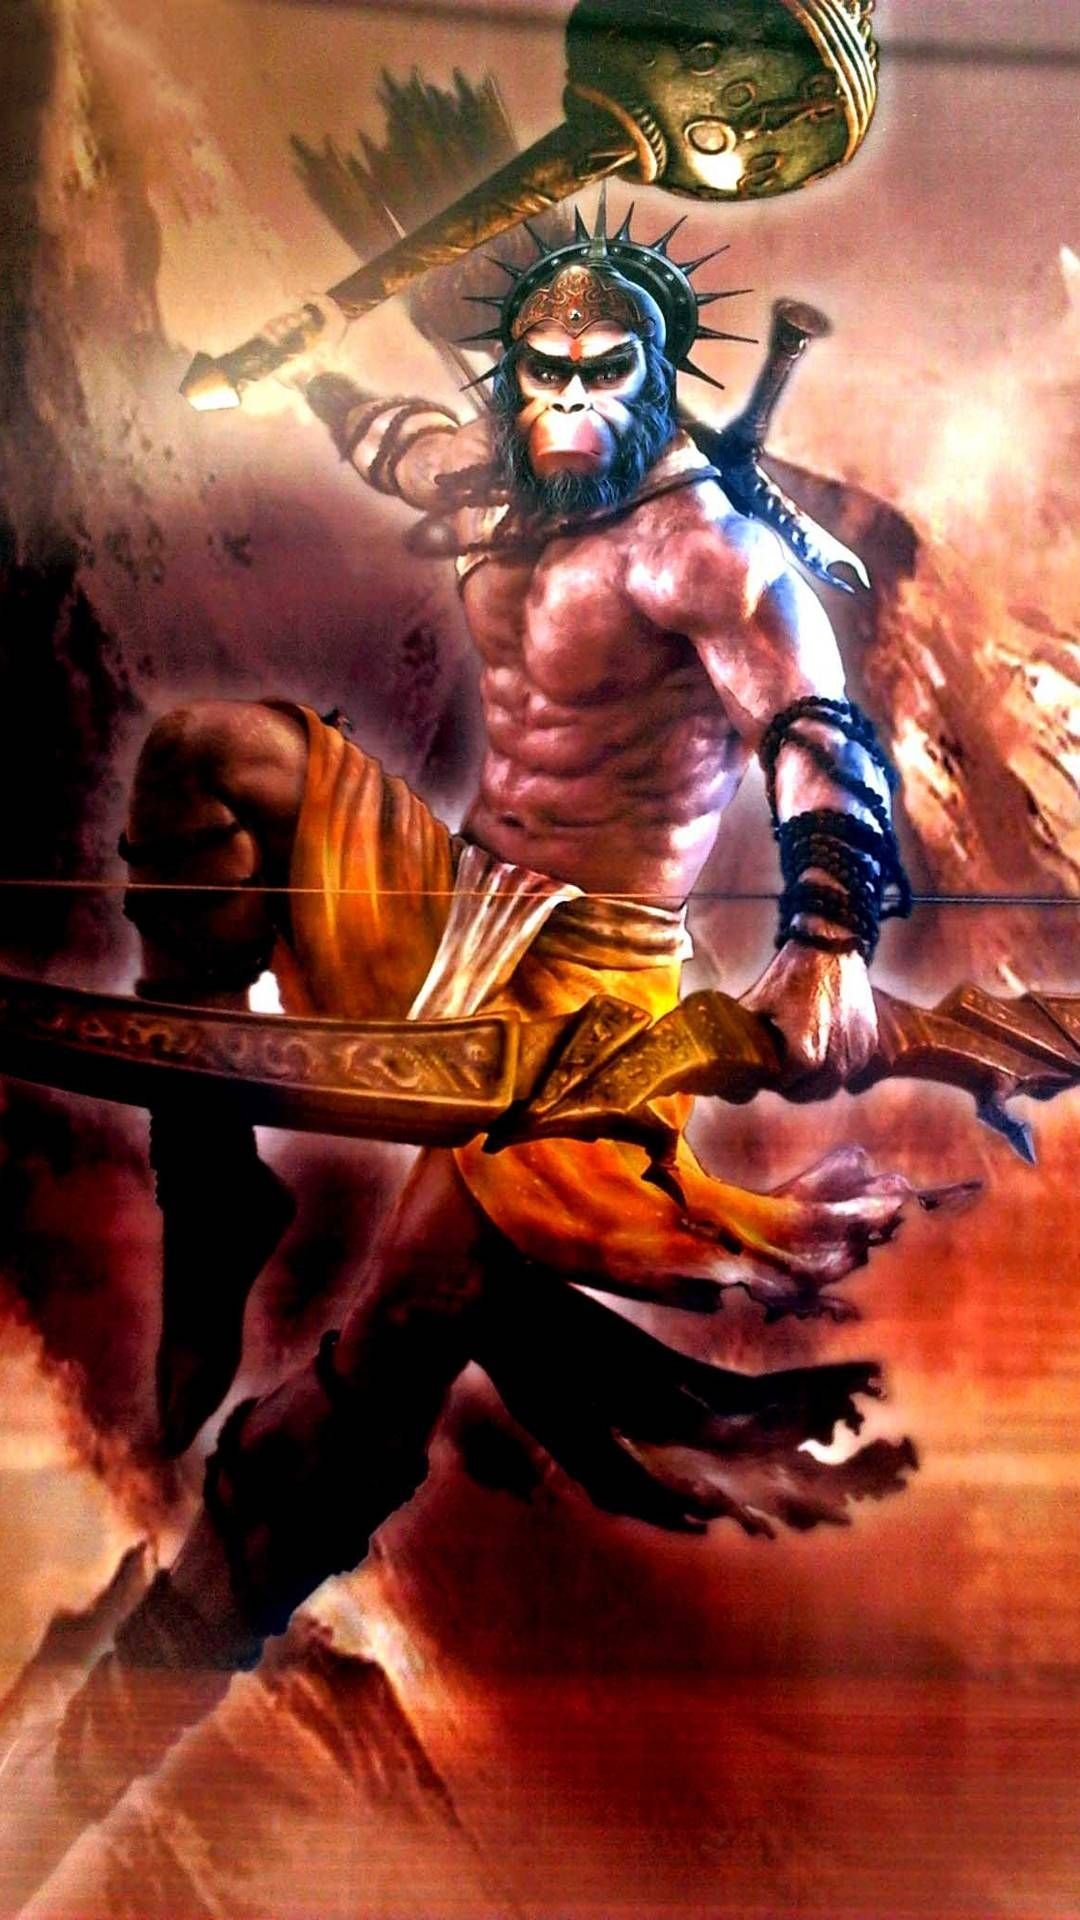 Angry Lord Bajrangbali